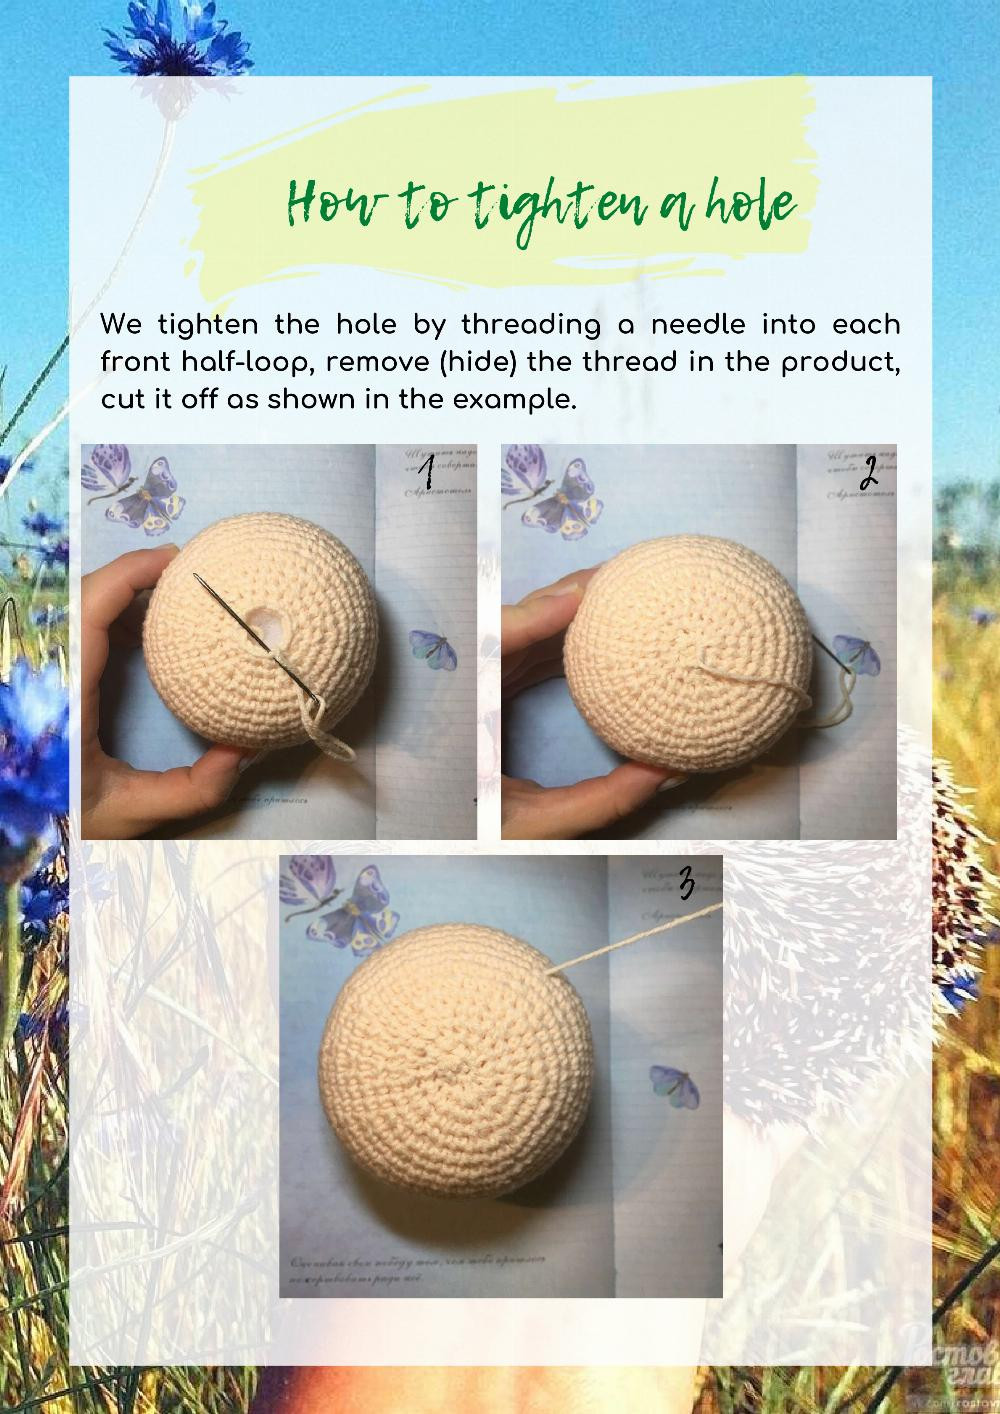 Crochet pattern "Hedgehog LUCKy" summer 2019